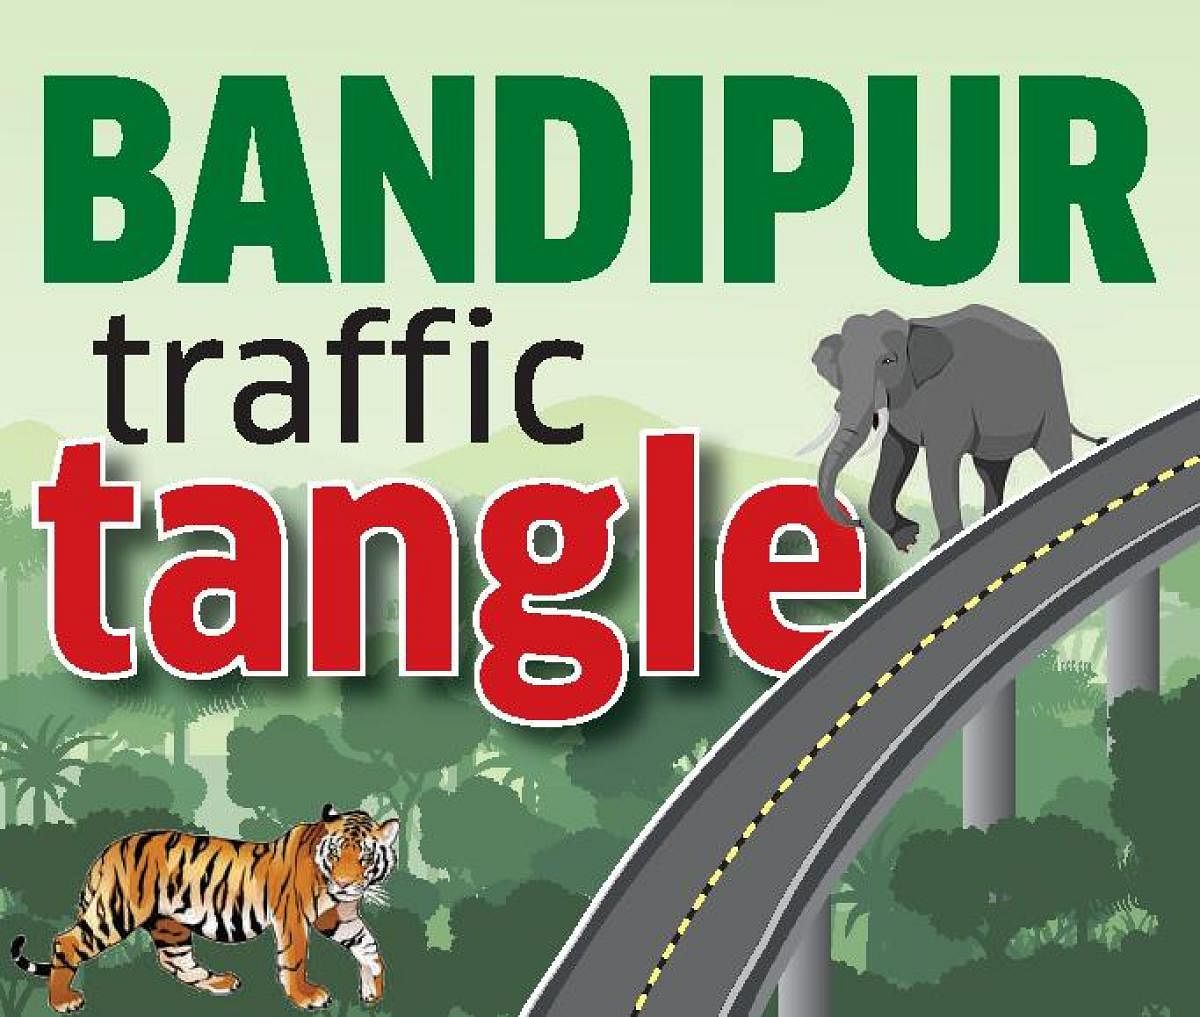 Bandipur Traffic Tangle LOGO